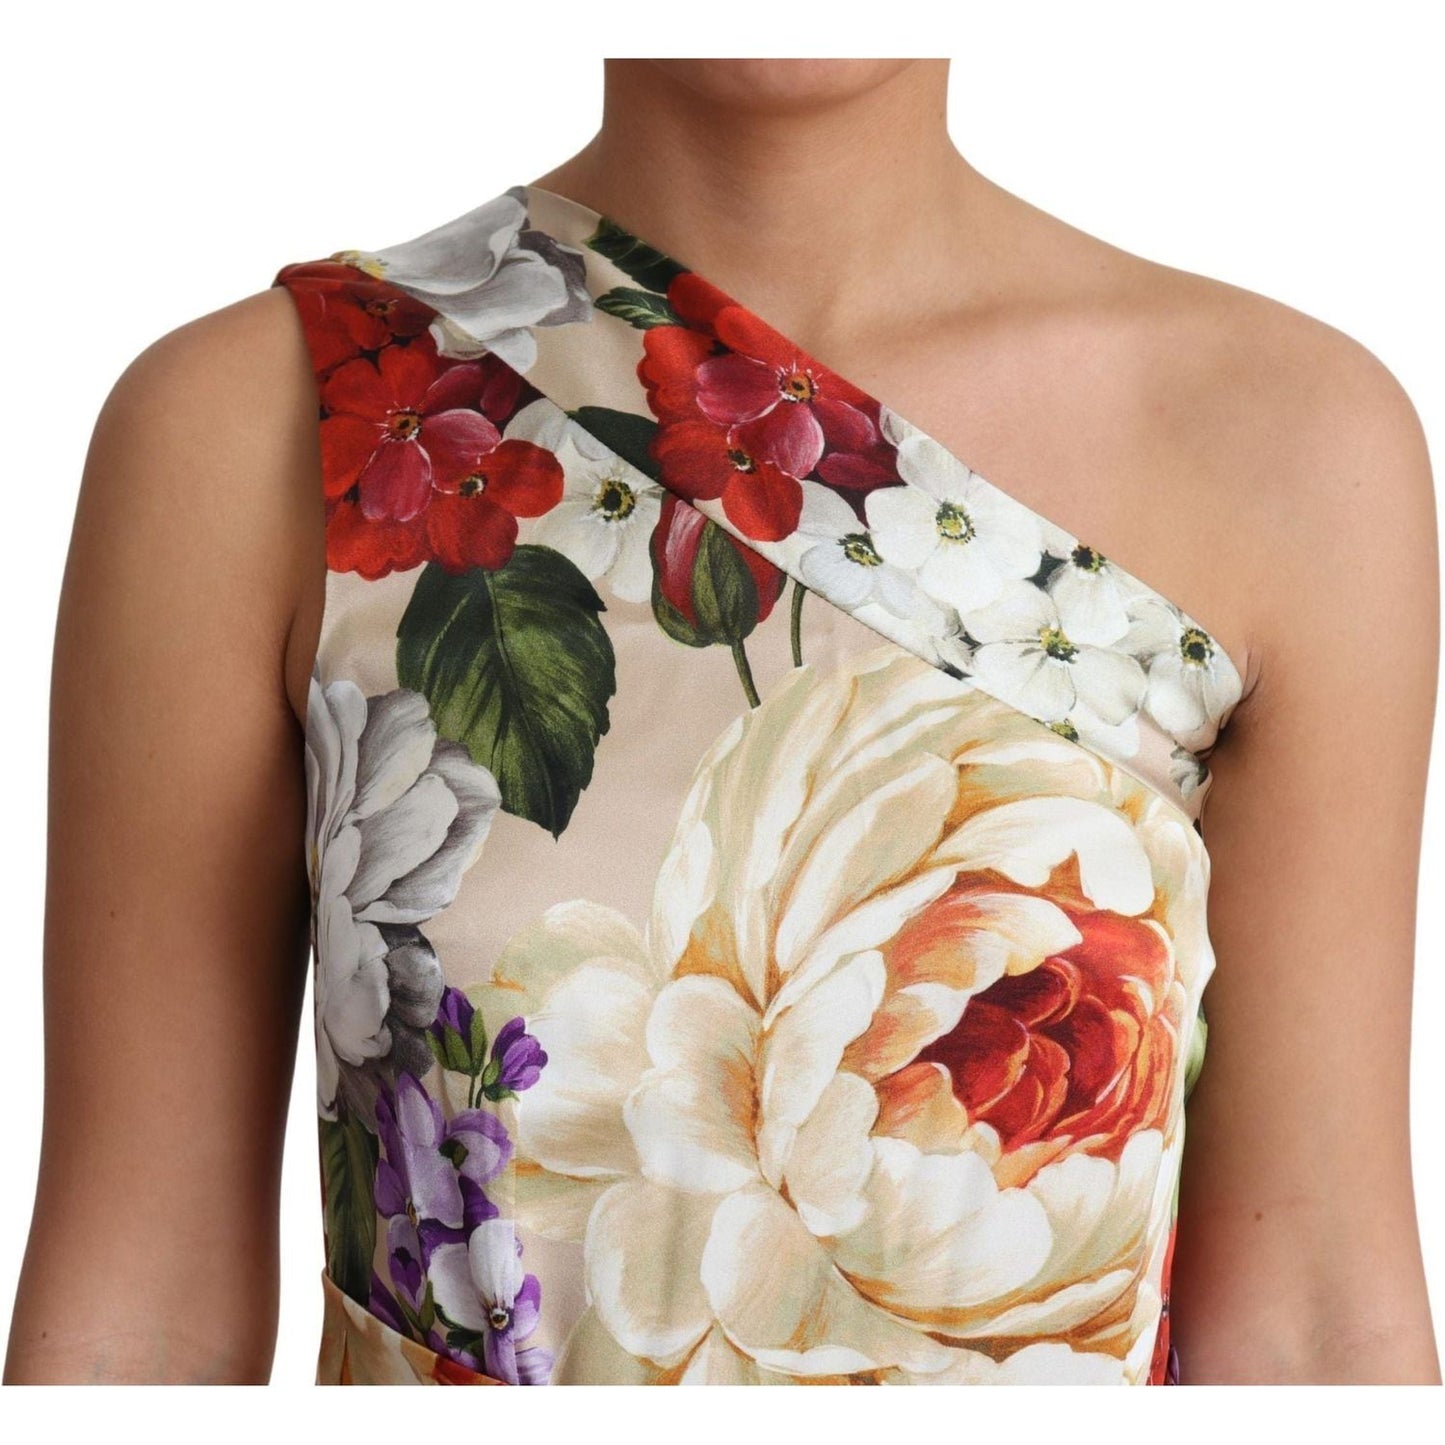 Dolce & Gabbana Elegant One-Shoulder Floral Silk Maxi Dress WOMAN DRESSES print-silk-stretch-one-shoulder-dress-floral